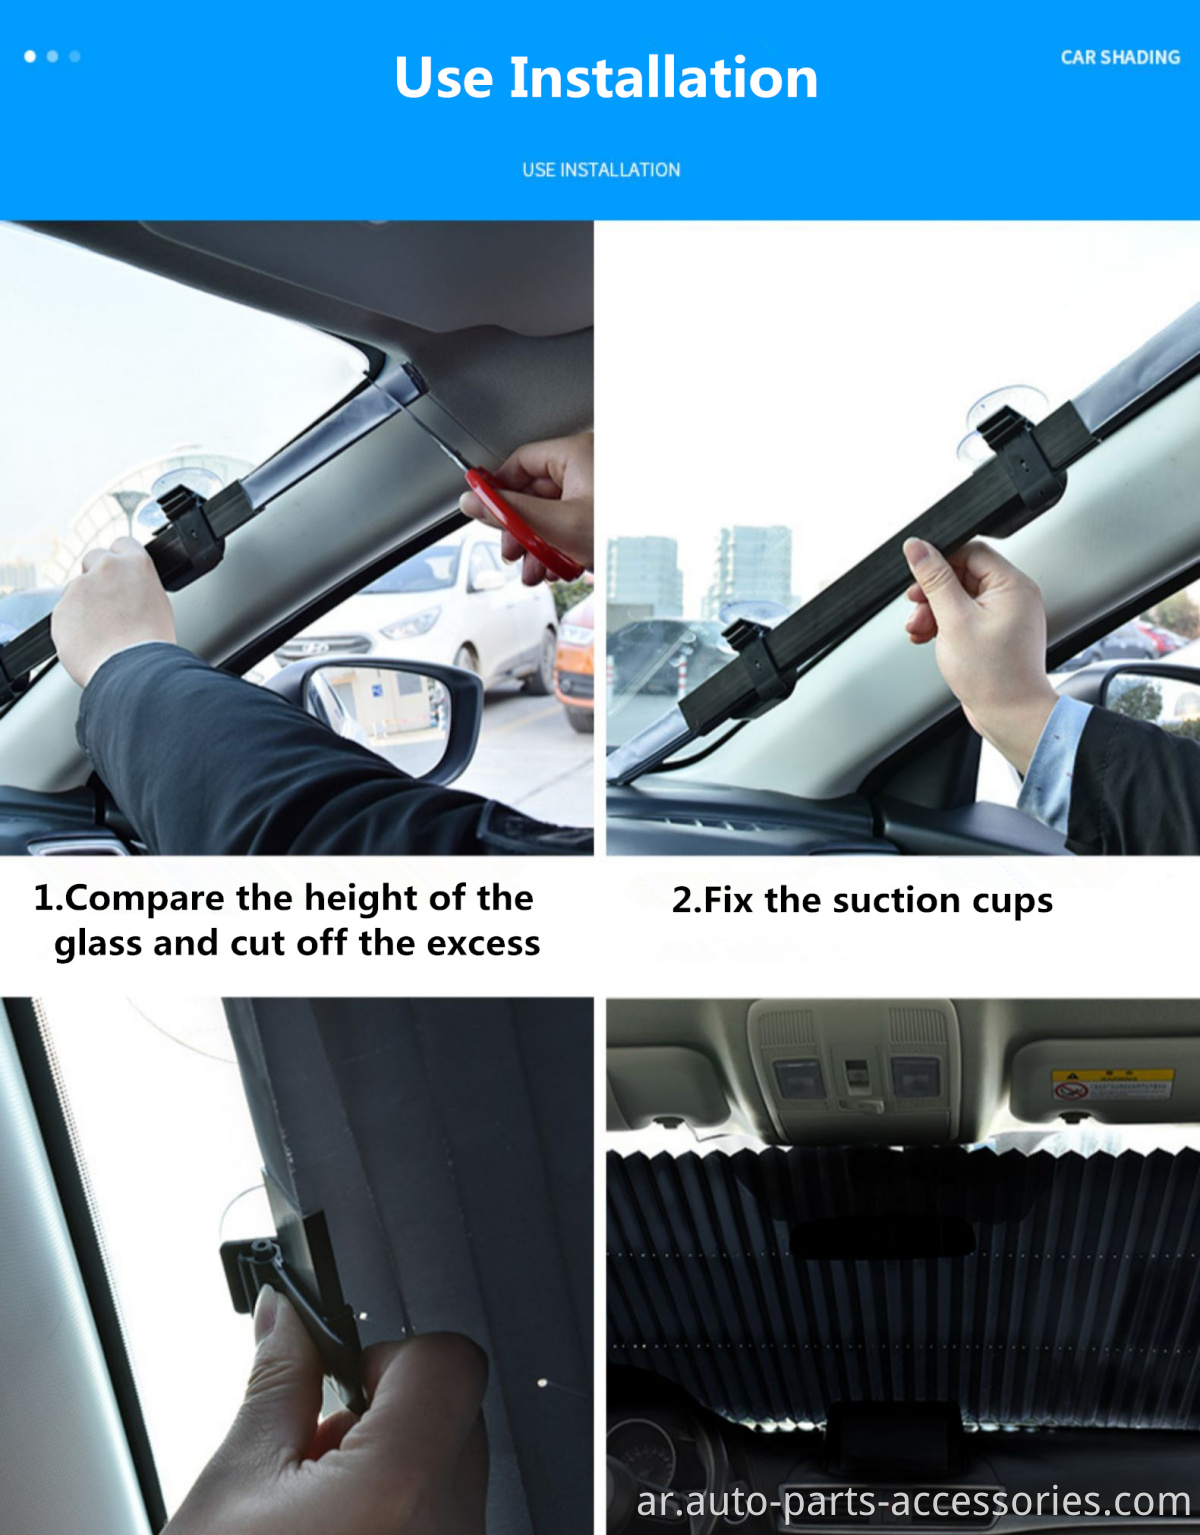 الإعلان الساخن الصيف المقاوم للحرارة سيارات الدفع الرباعي MVP Window Windows Magnets Car Sunshade Automatic 2020